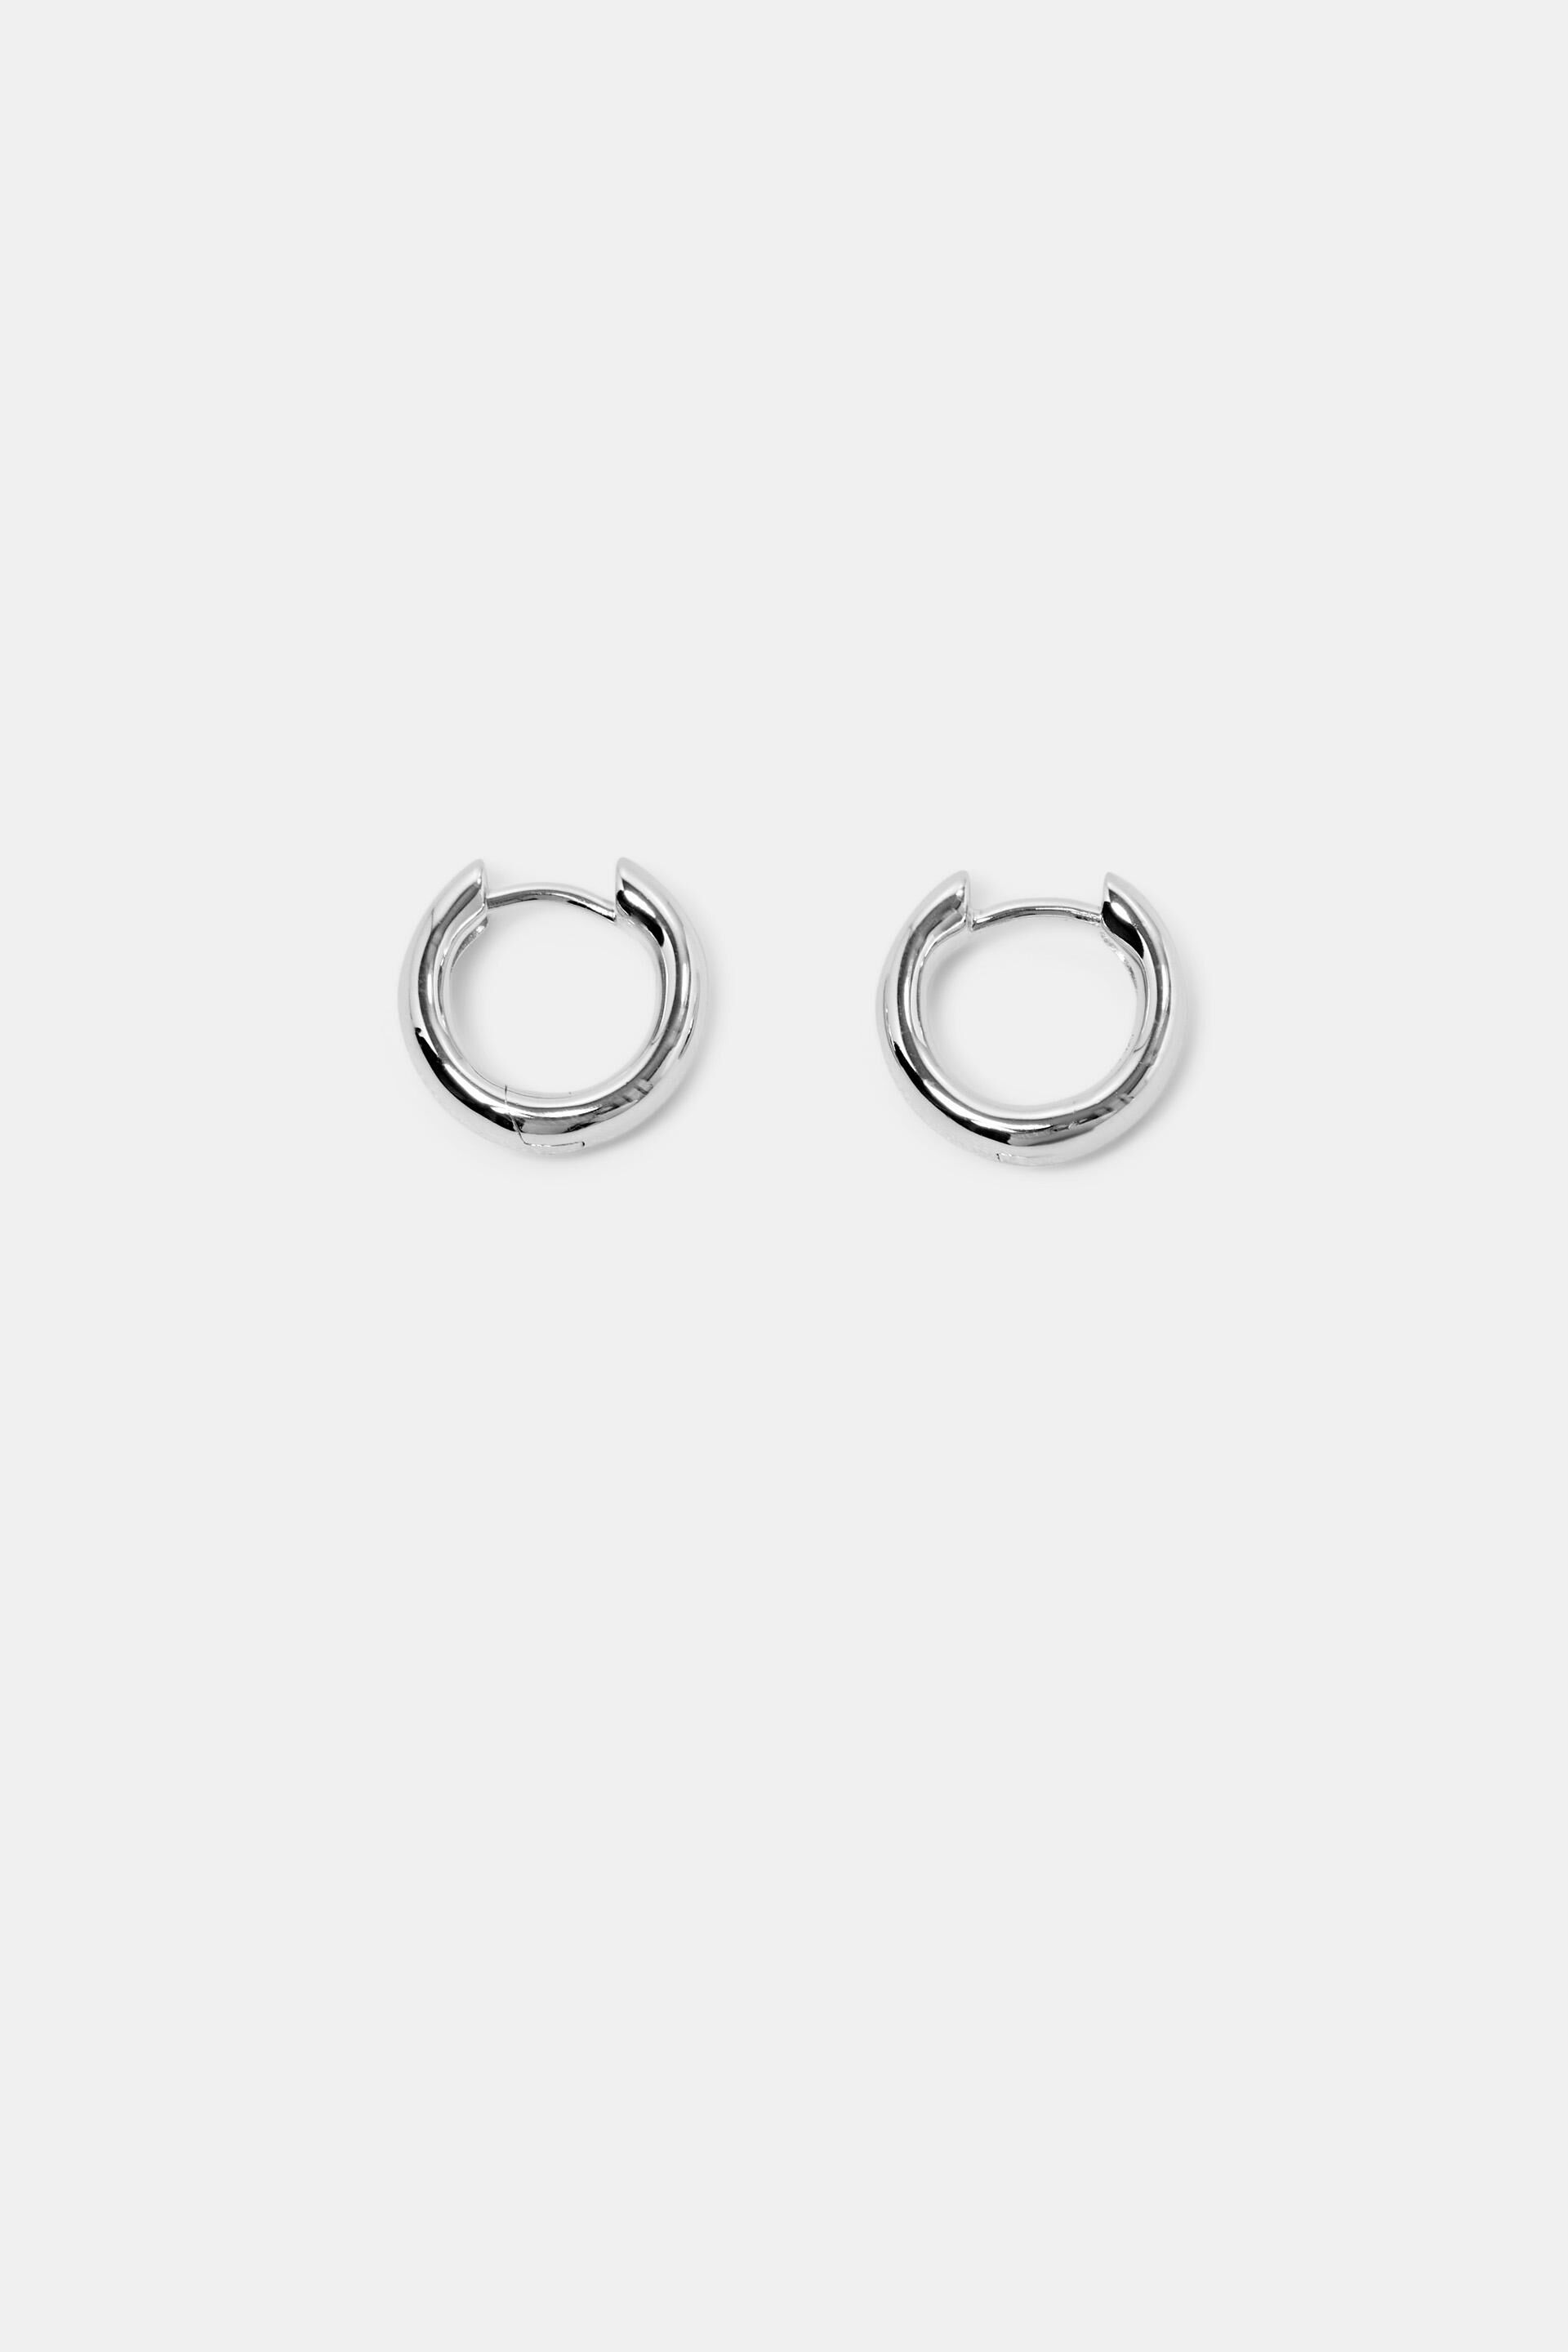 Esprit Online Store Small Sterling Silver Hoop Earrings